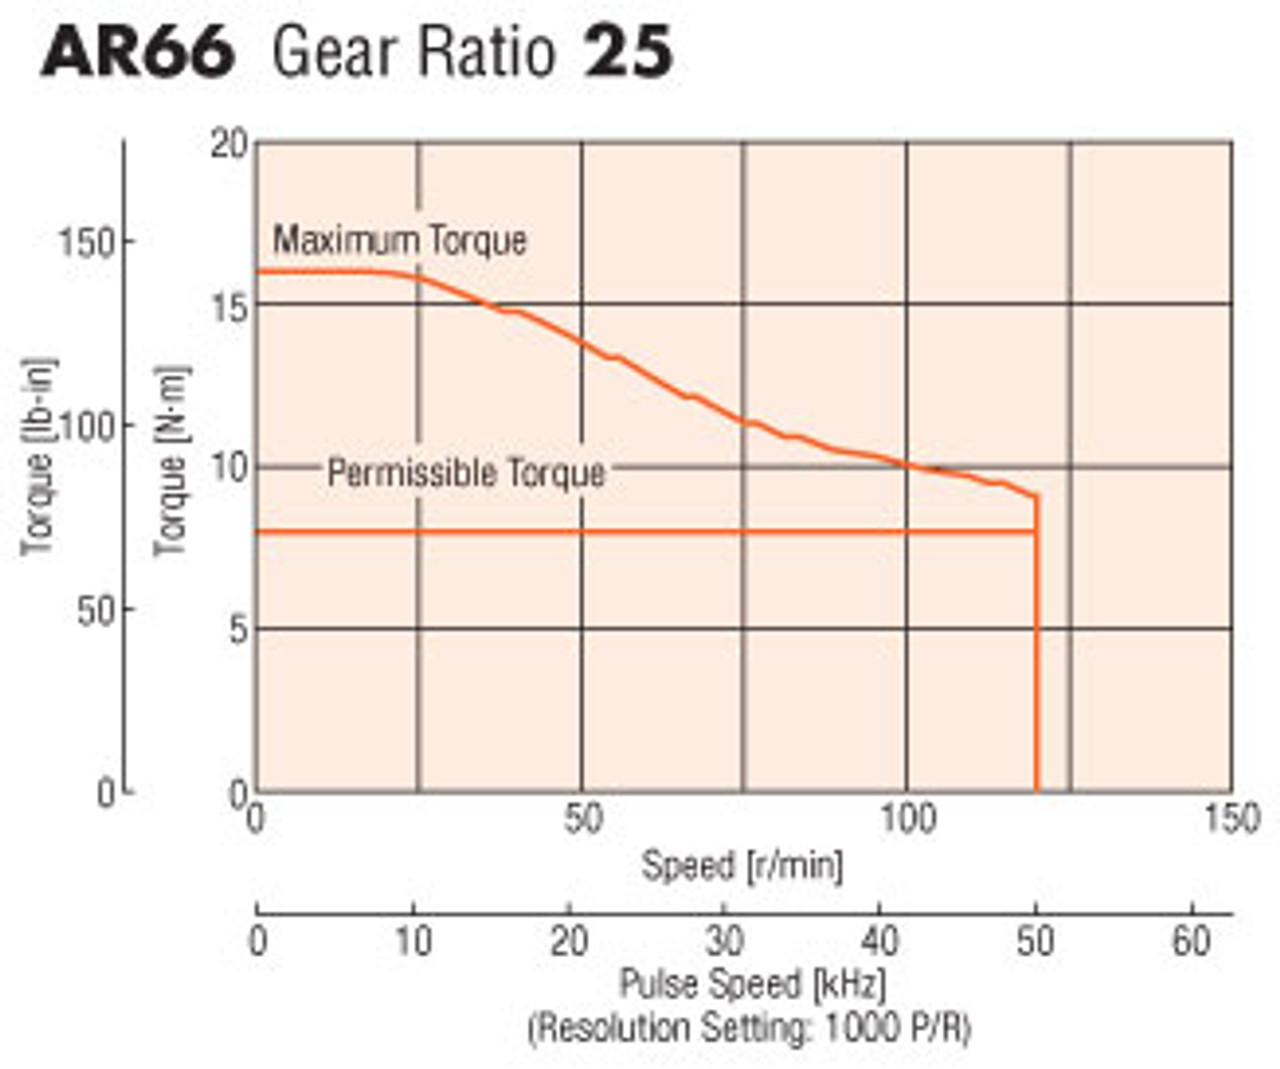 AR66AAD-PS25-3 - Speed-Torque